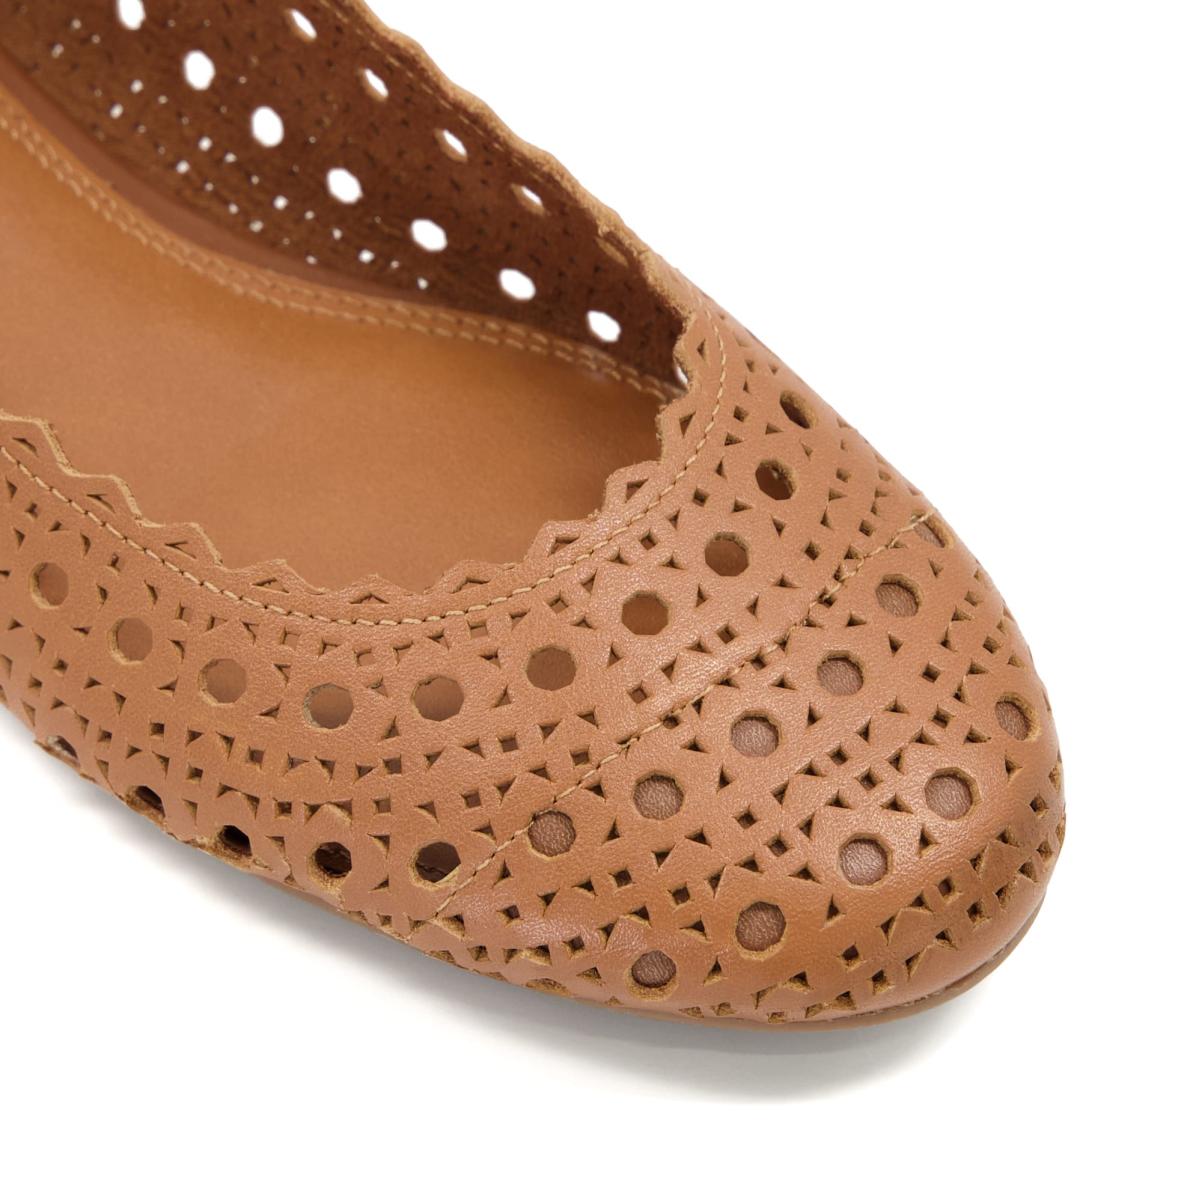 Dune London Harlows - Tan Flat Shoes Women - 4